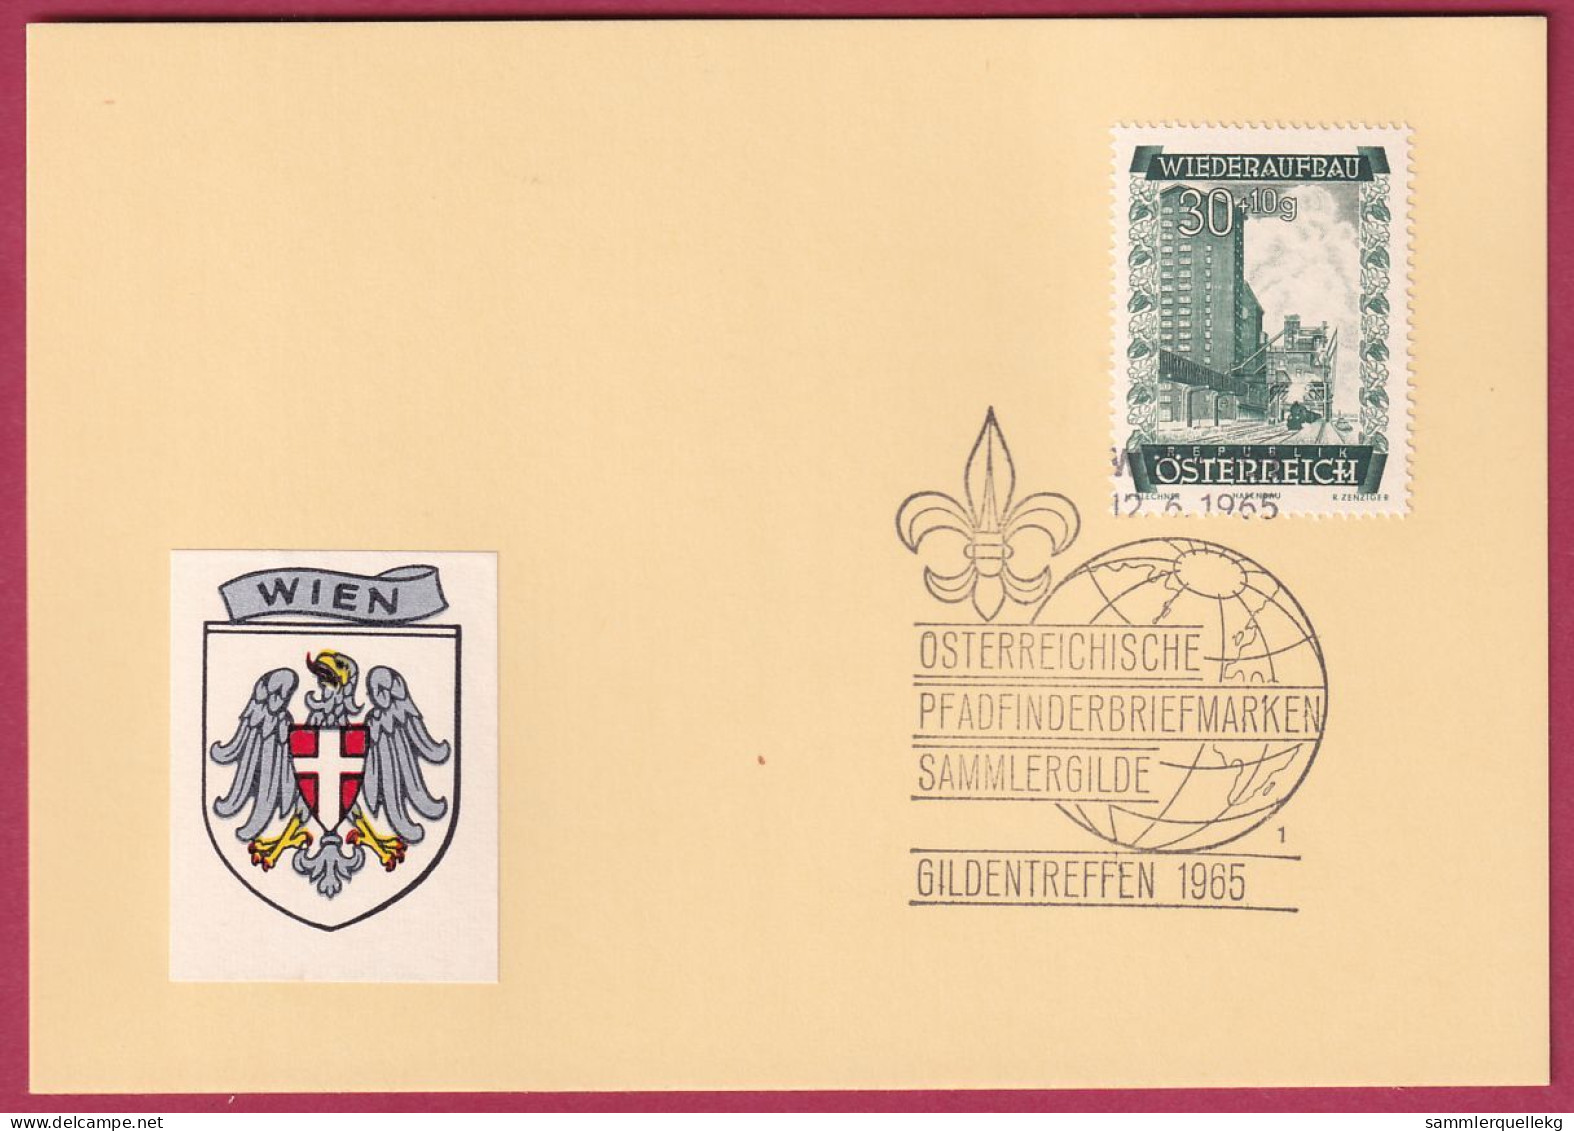 Österreich MNr. 860 Sonderstempel 12. 6. 1965 Österreich Pfadfinderbriefmarken Sammlergilde 1965 - Covers & Documents